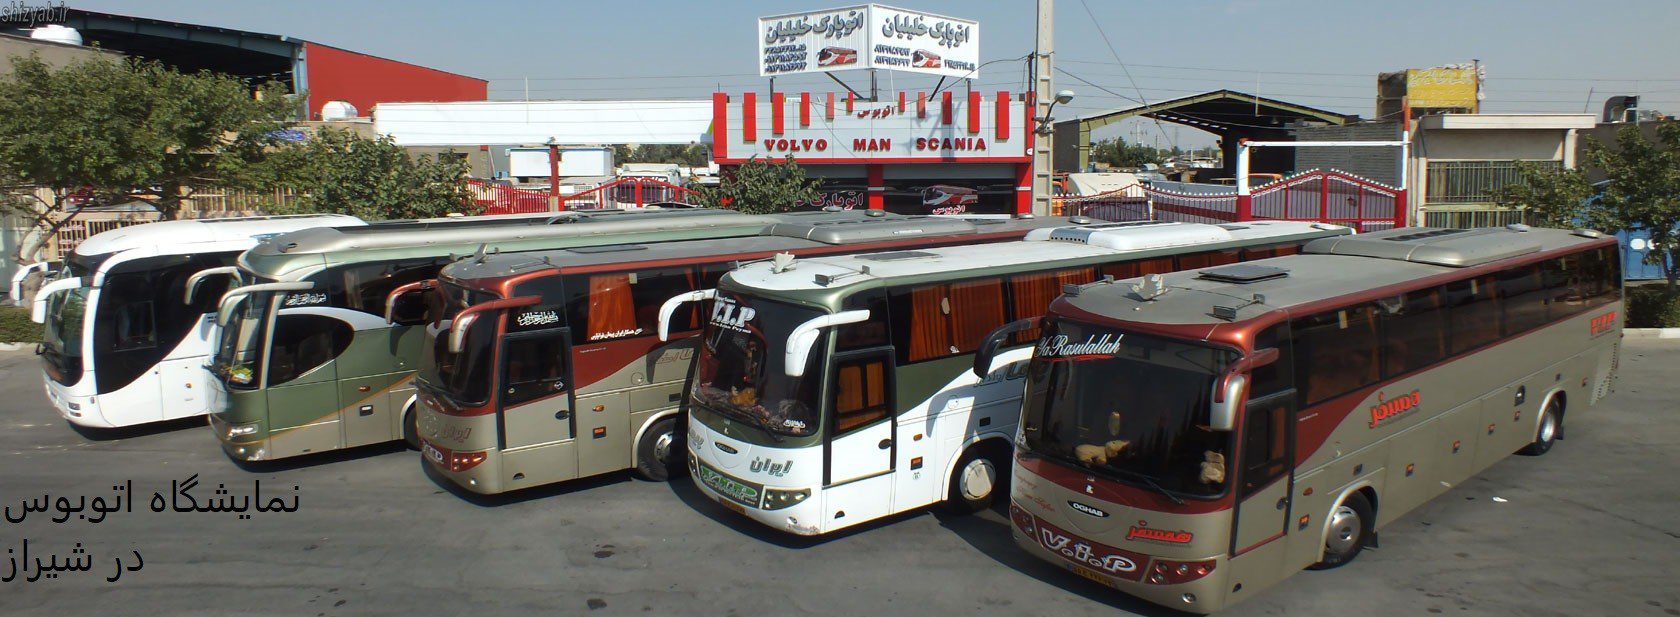 نمایشگاه اتوبوس در شیراز